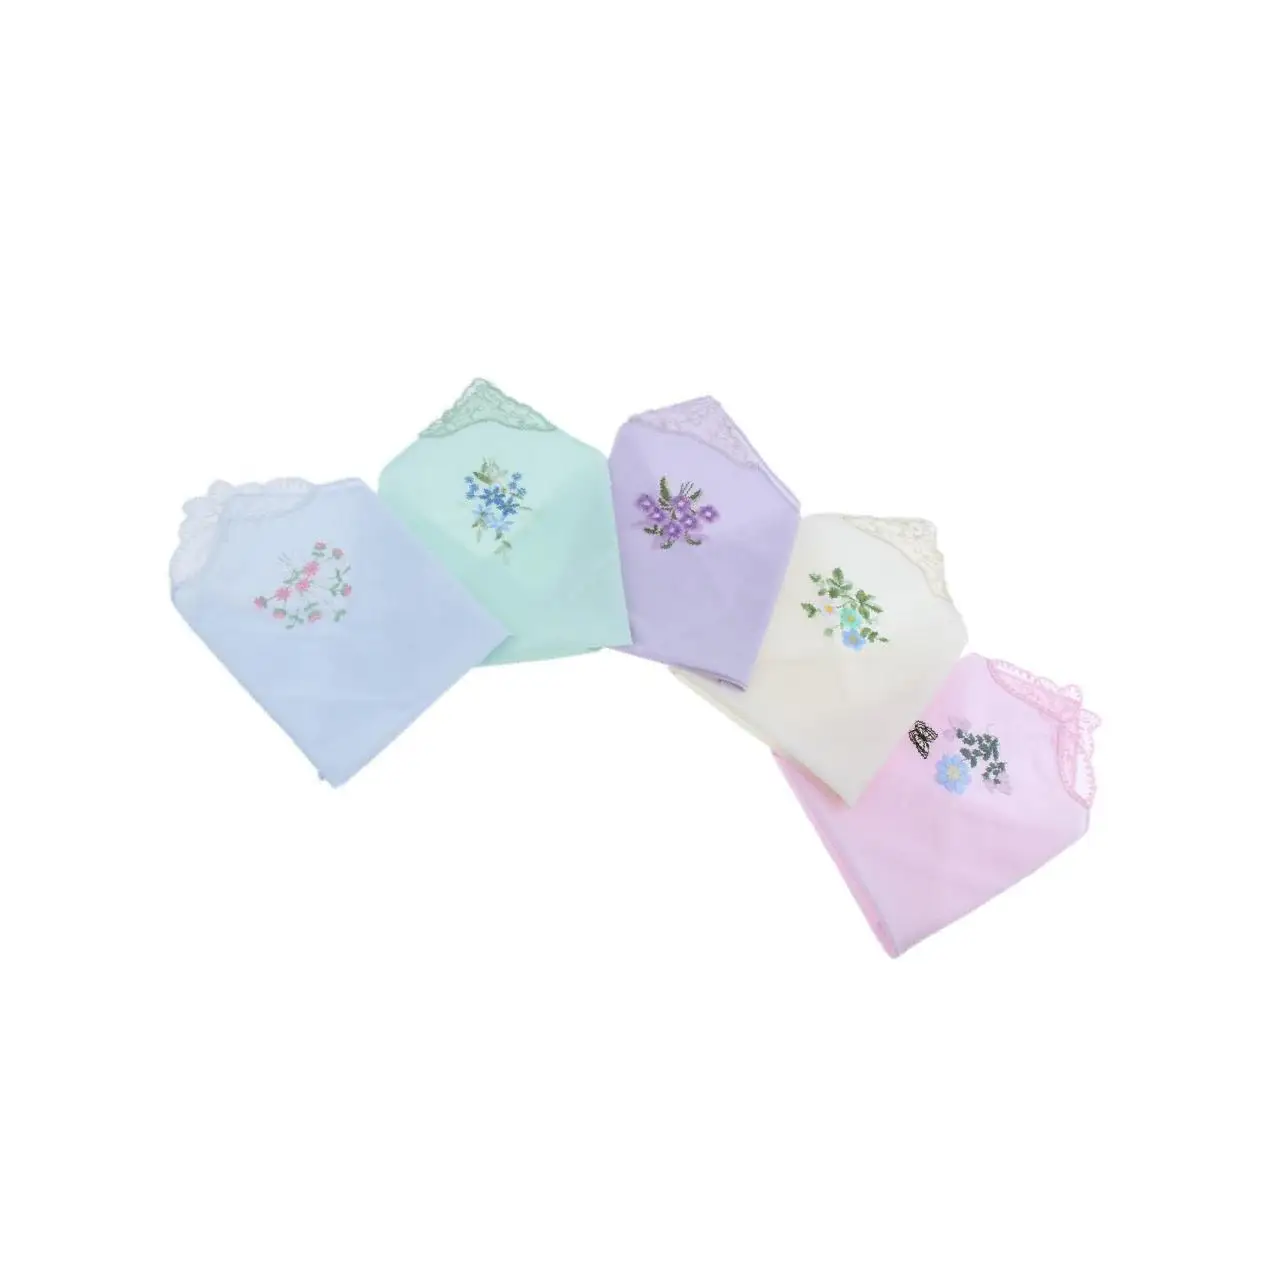 

Women Ladies Cotton Floral Embroidery Handkerchiefs Lace Hankie Set of 5